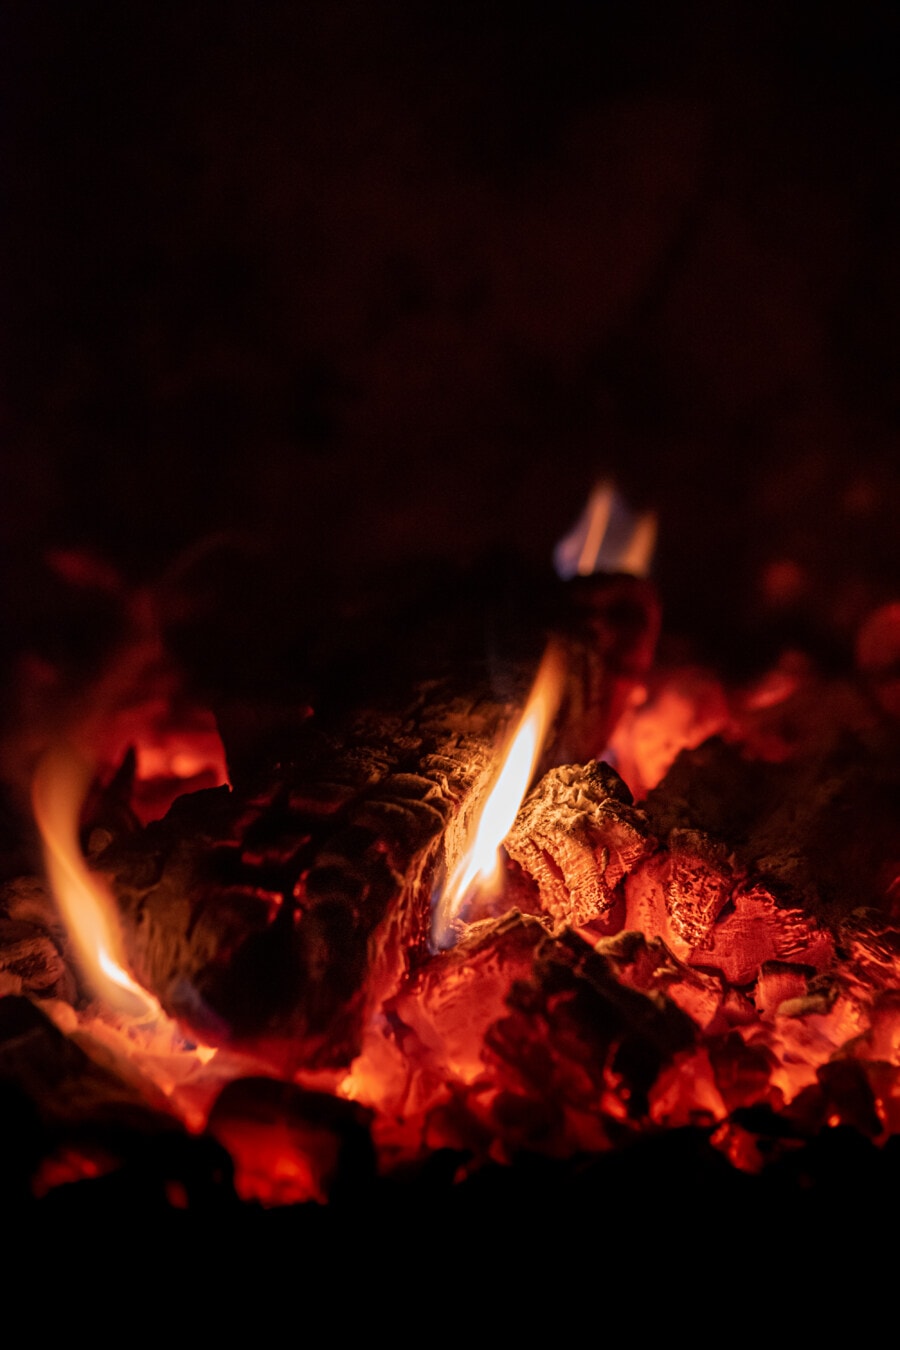 lareira, fogueira, fogo, queimadura, luz, calor, quente, quente, carvão, fogueira